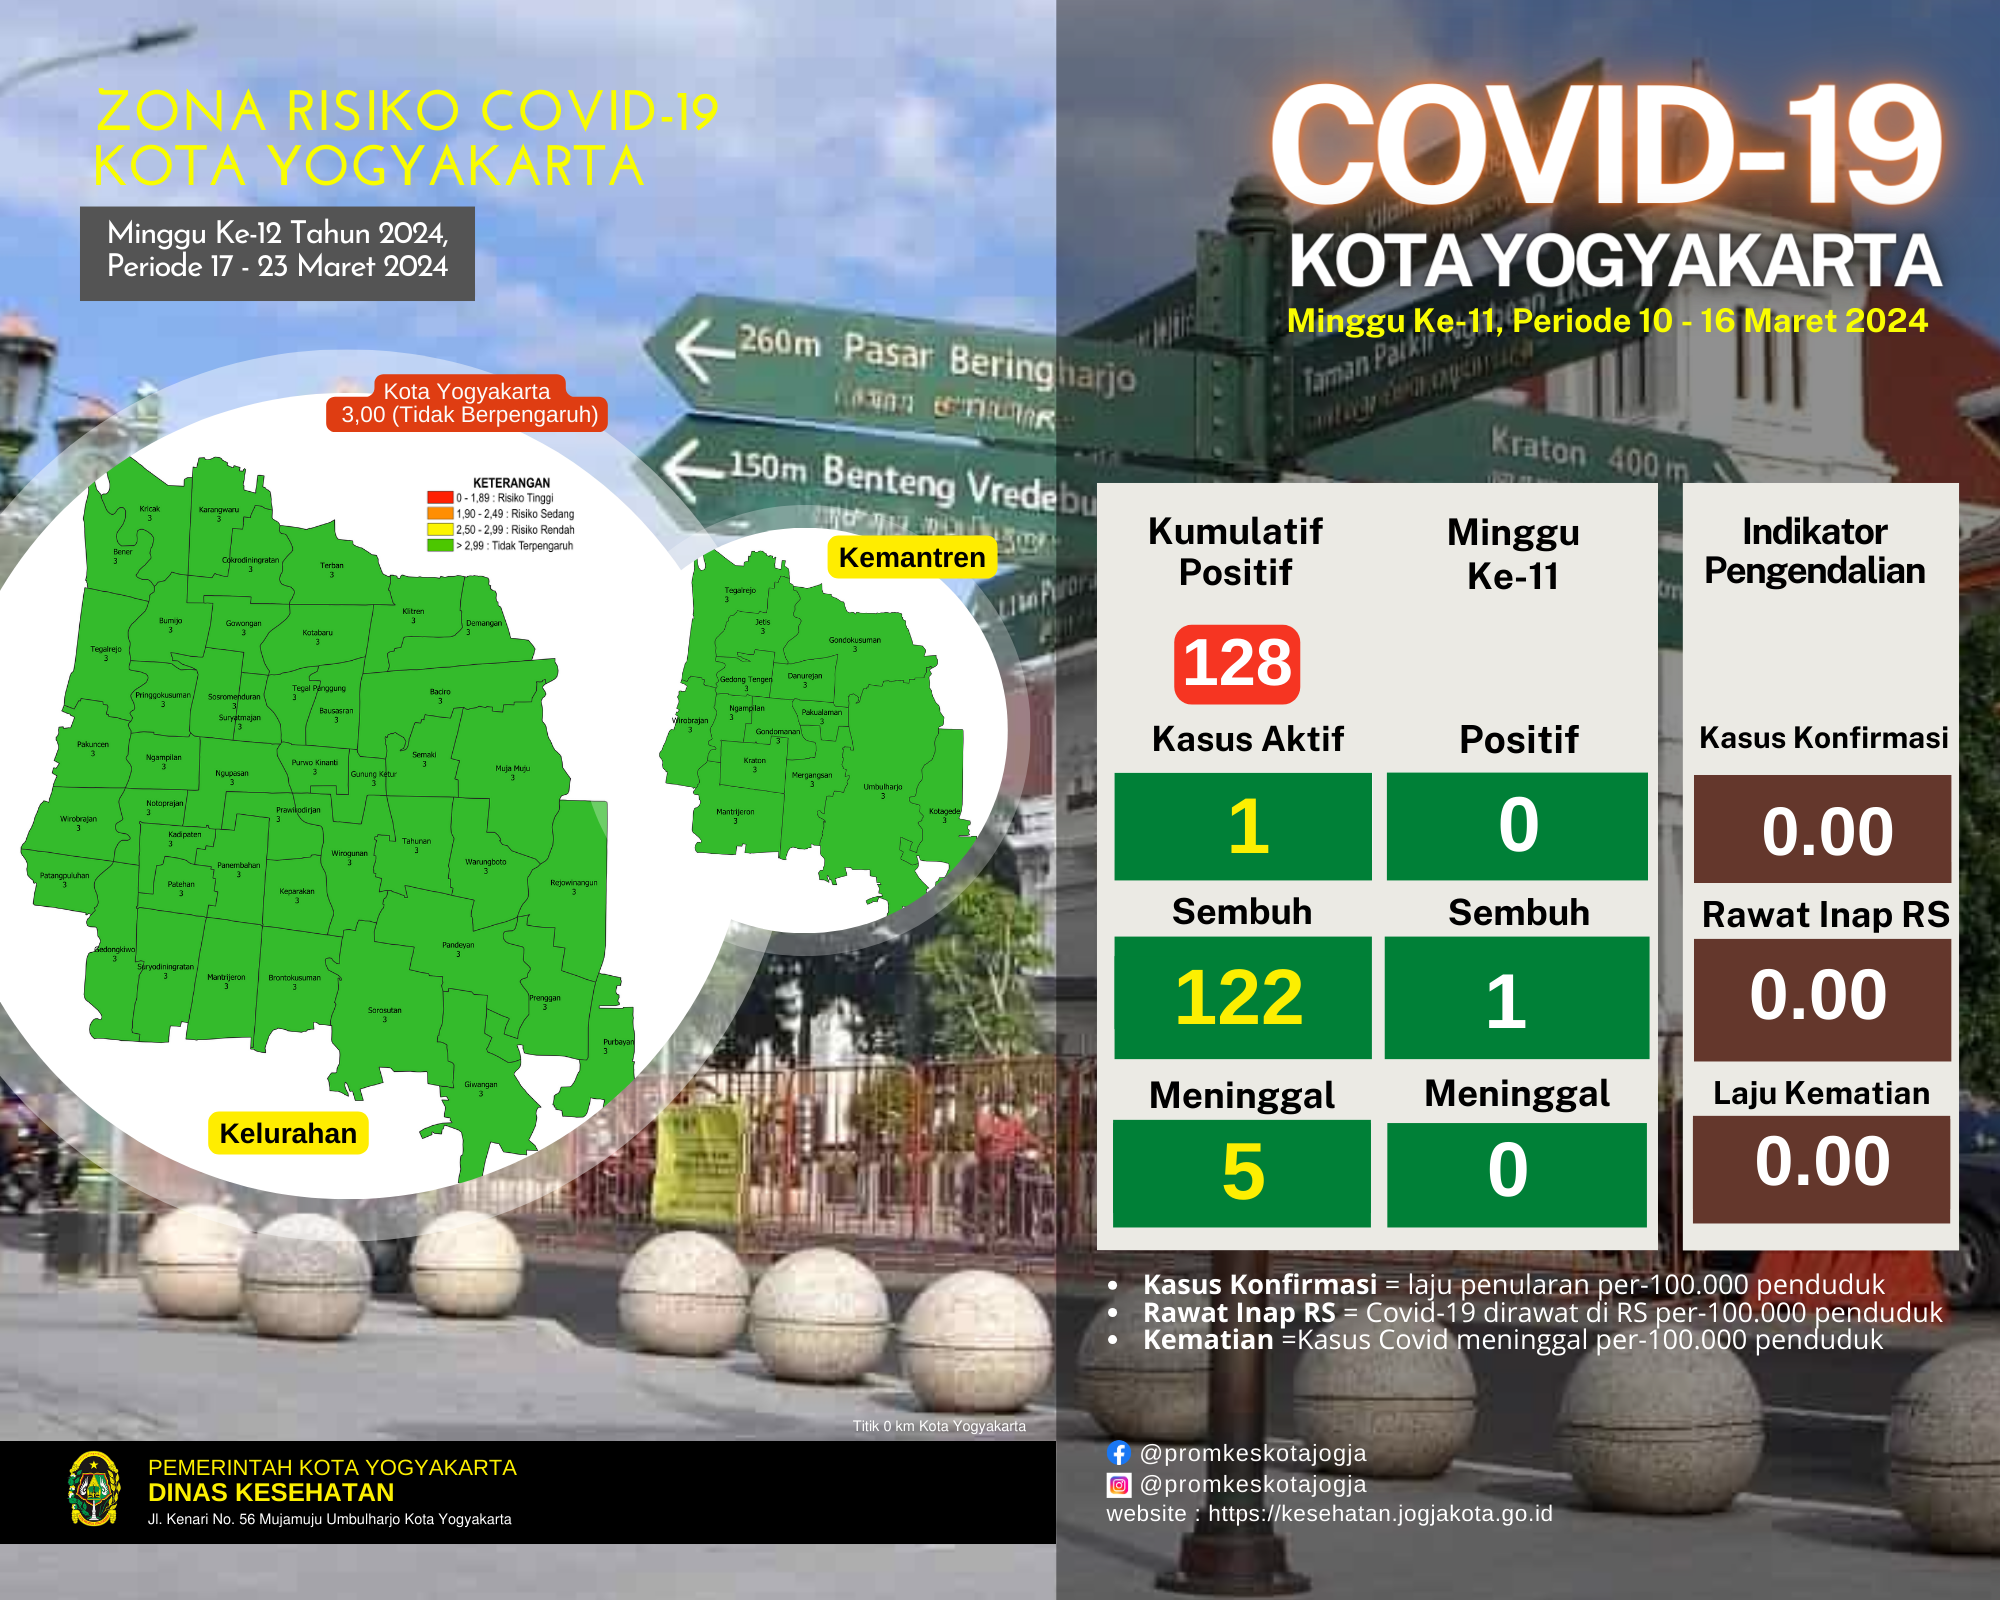 Risiko Covid-19 di Kota Yogyakarta pada 17 - 23 Maret 2024